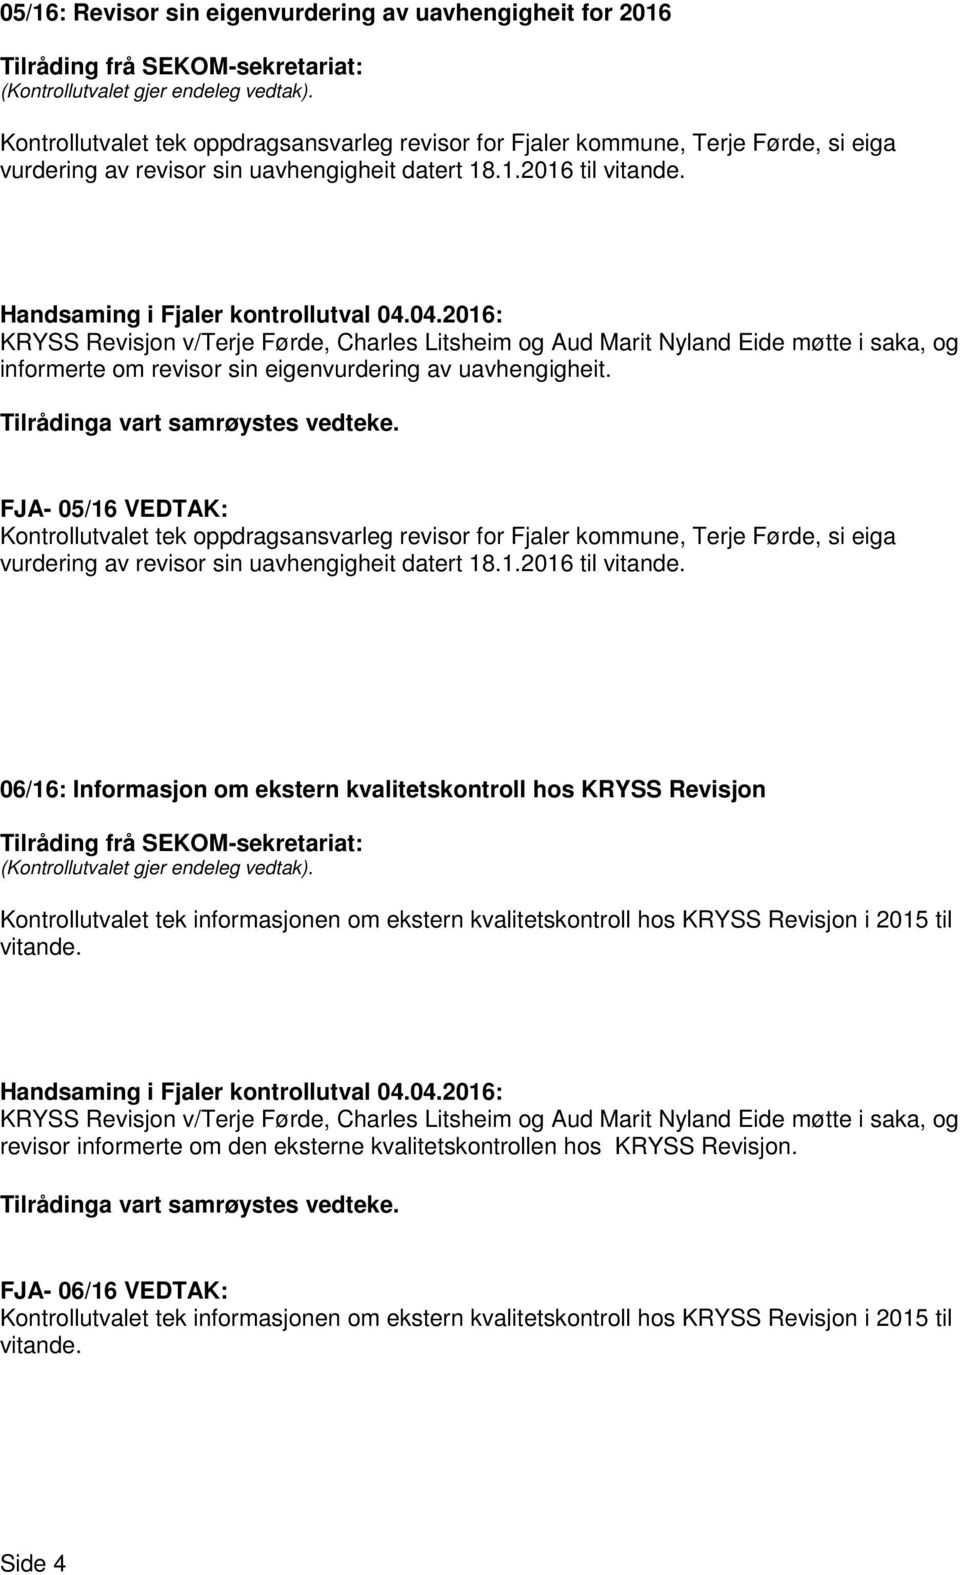 FJA- 05/16 VEDTAK: Kontrollutvalet tek oppdragsansvarleg revisor for Fjaler kommune, Terje Førde, si eiga vurdering av revisor sin uavhengigheit datert 18.1.2016 til vitande.